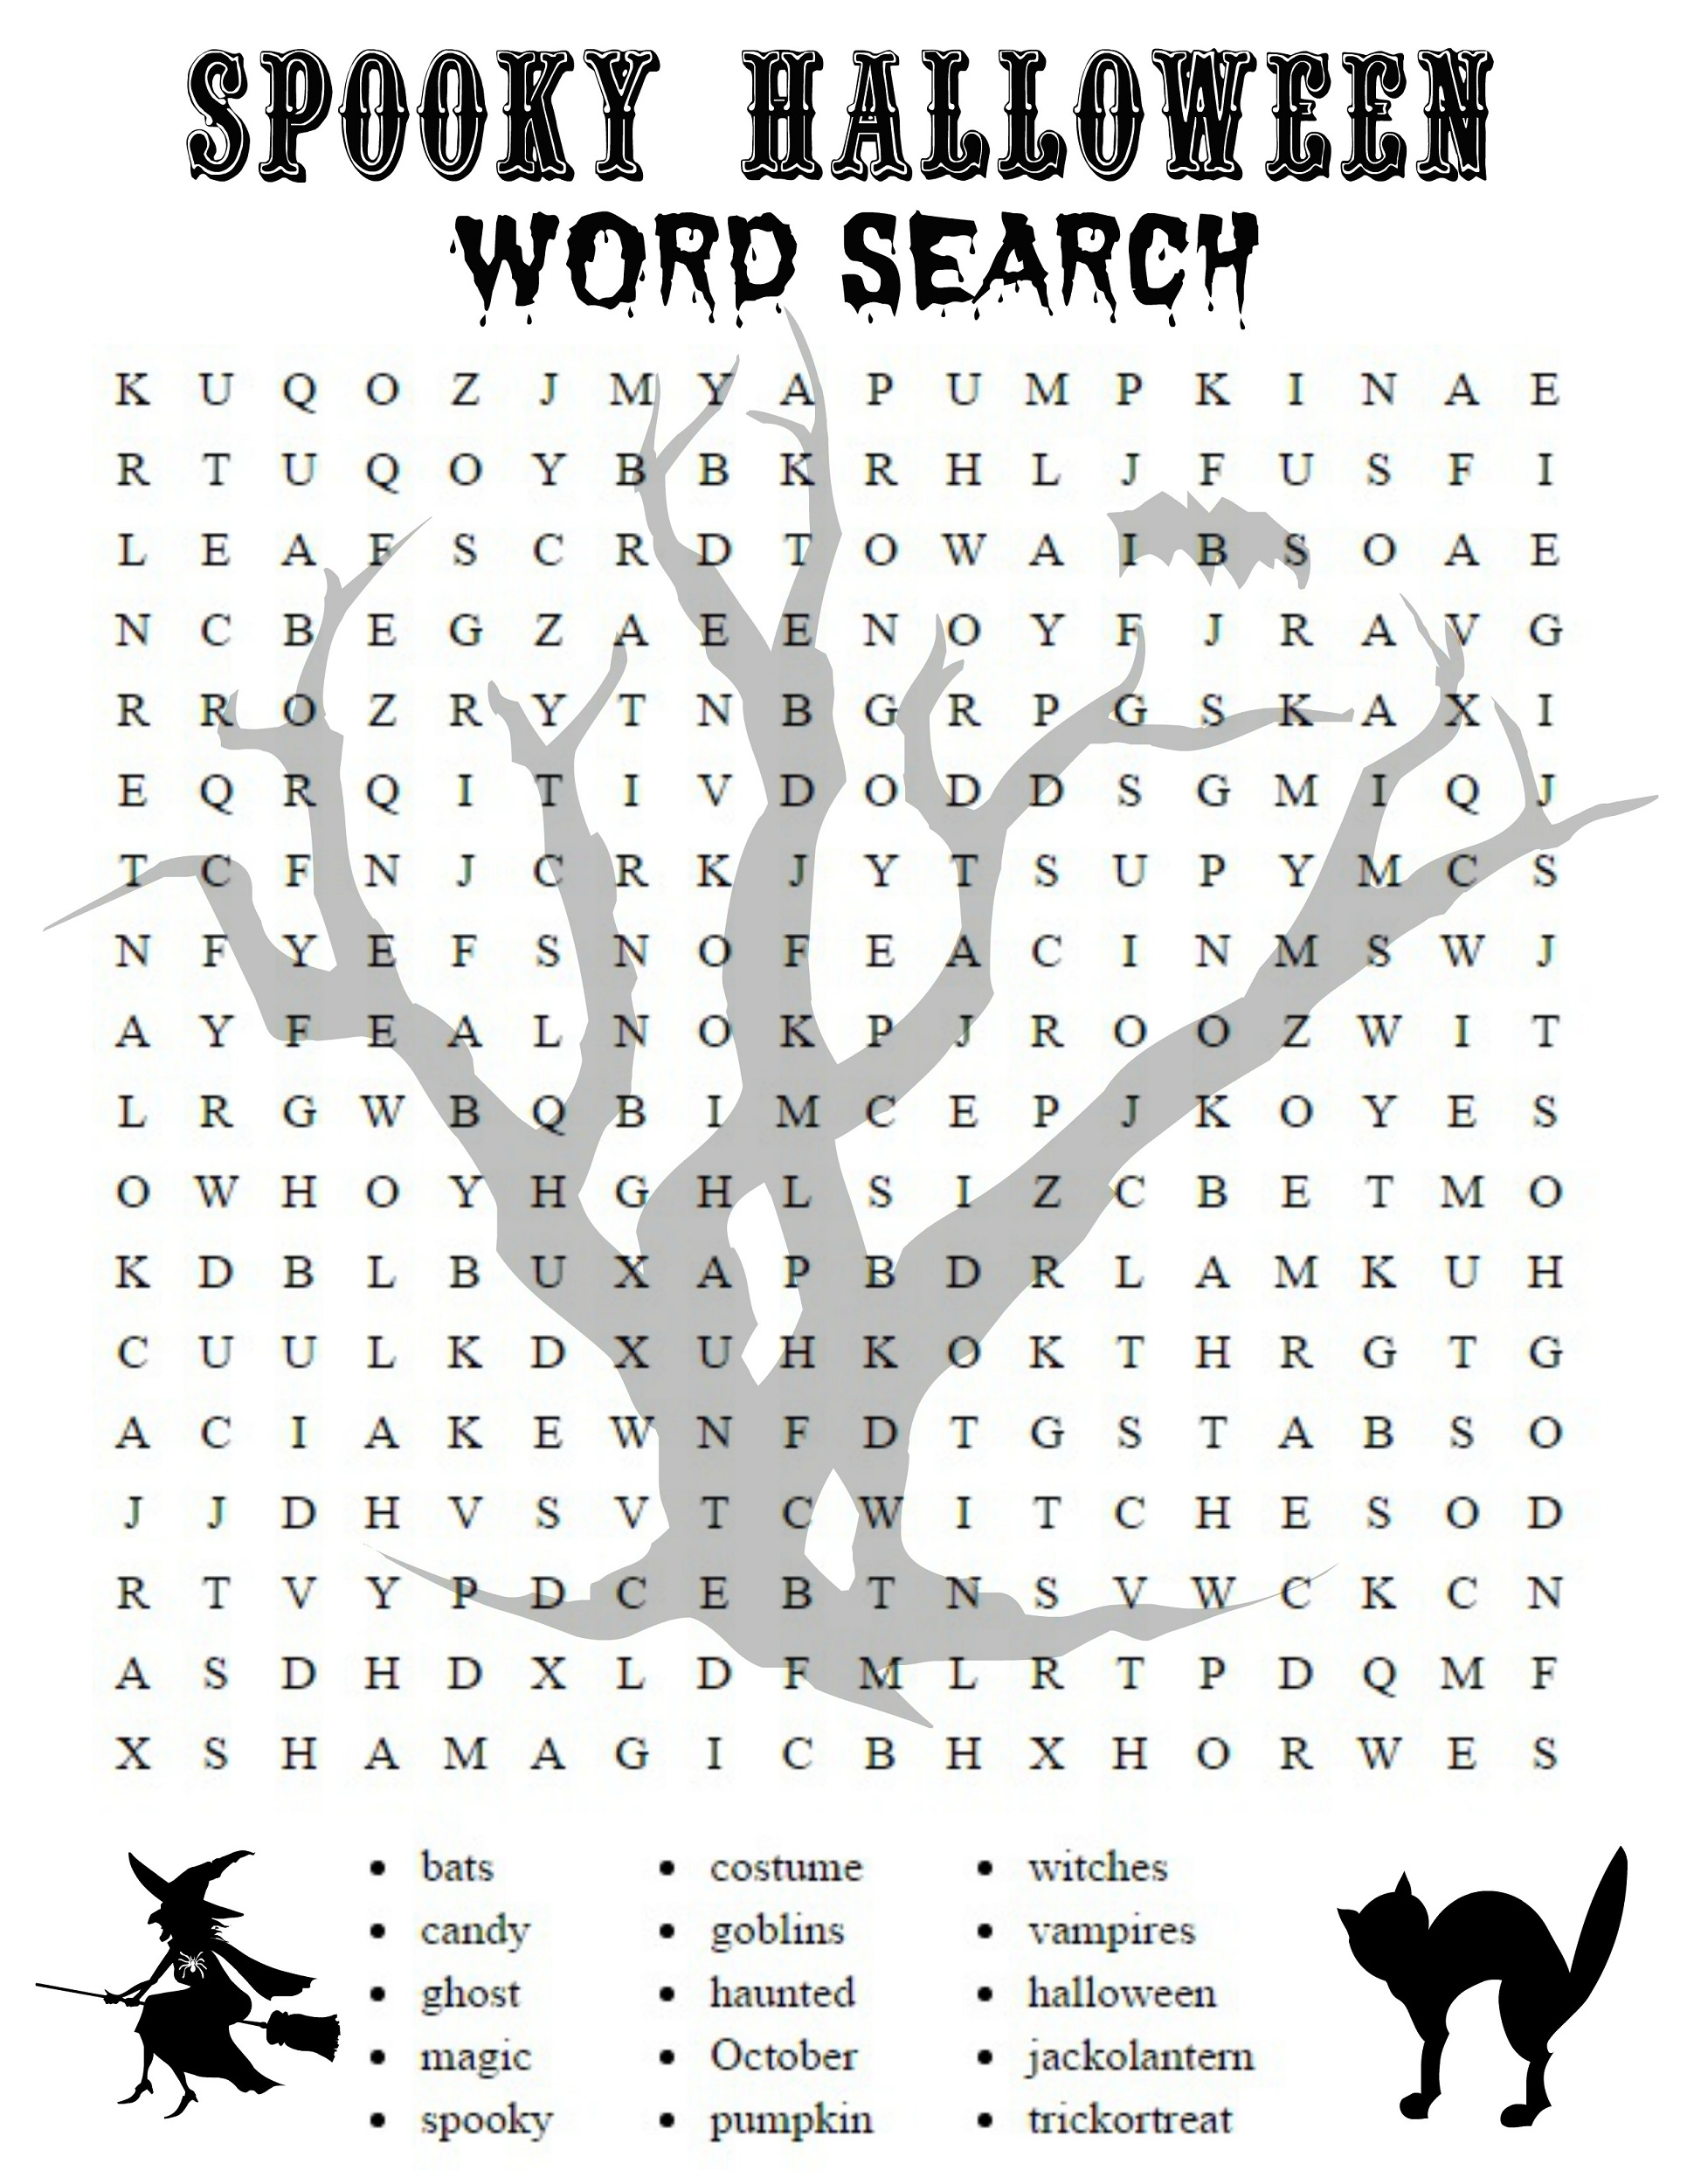 pdf search word